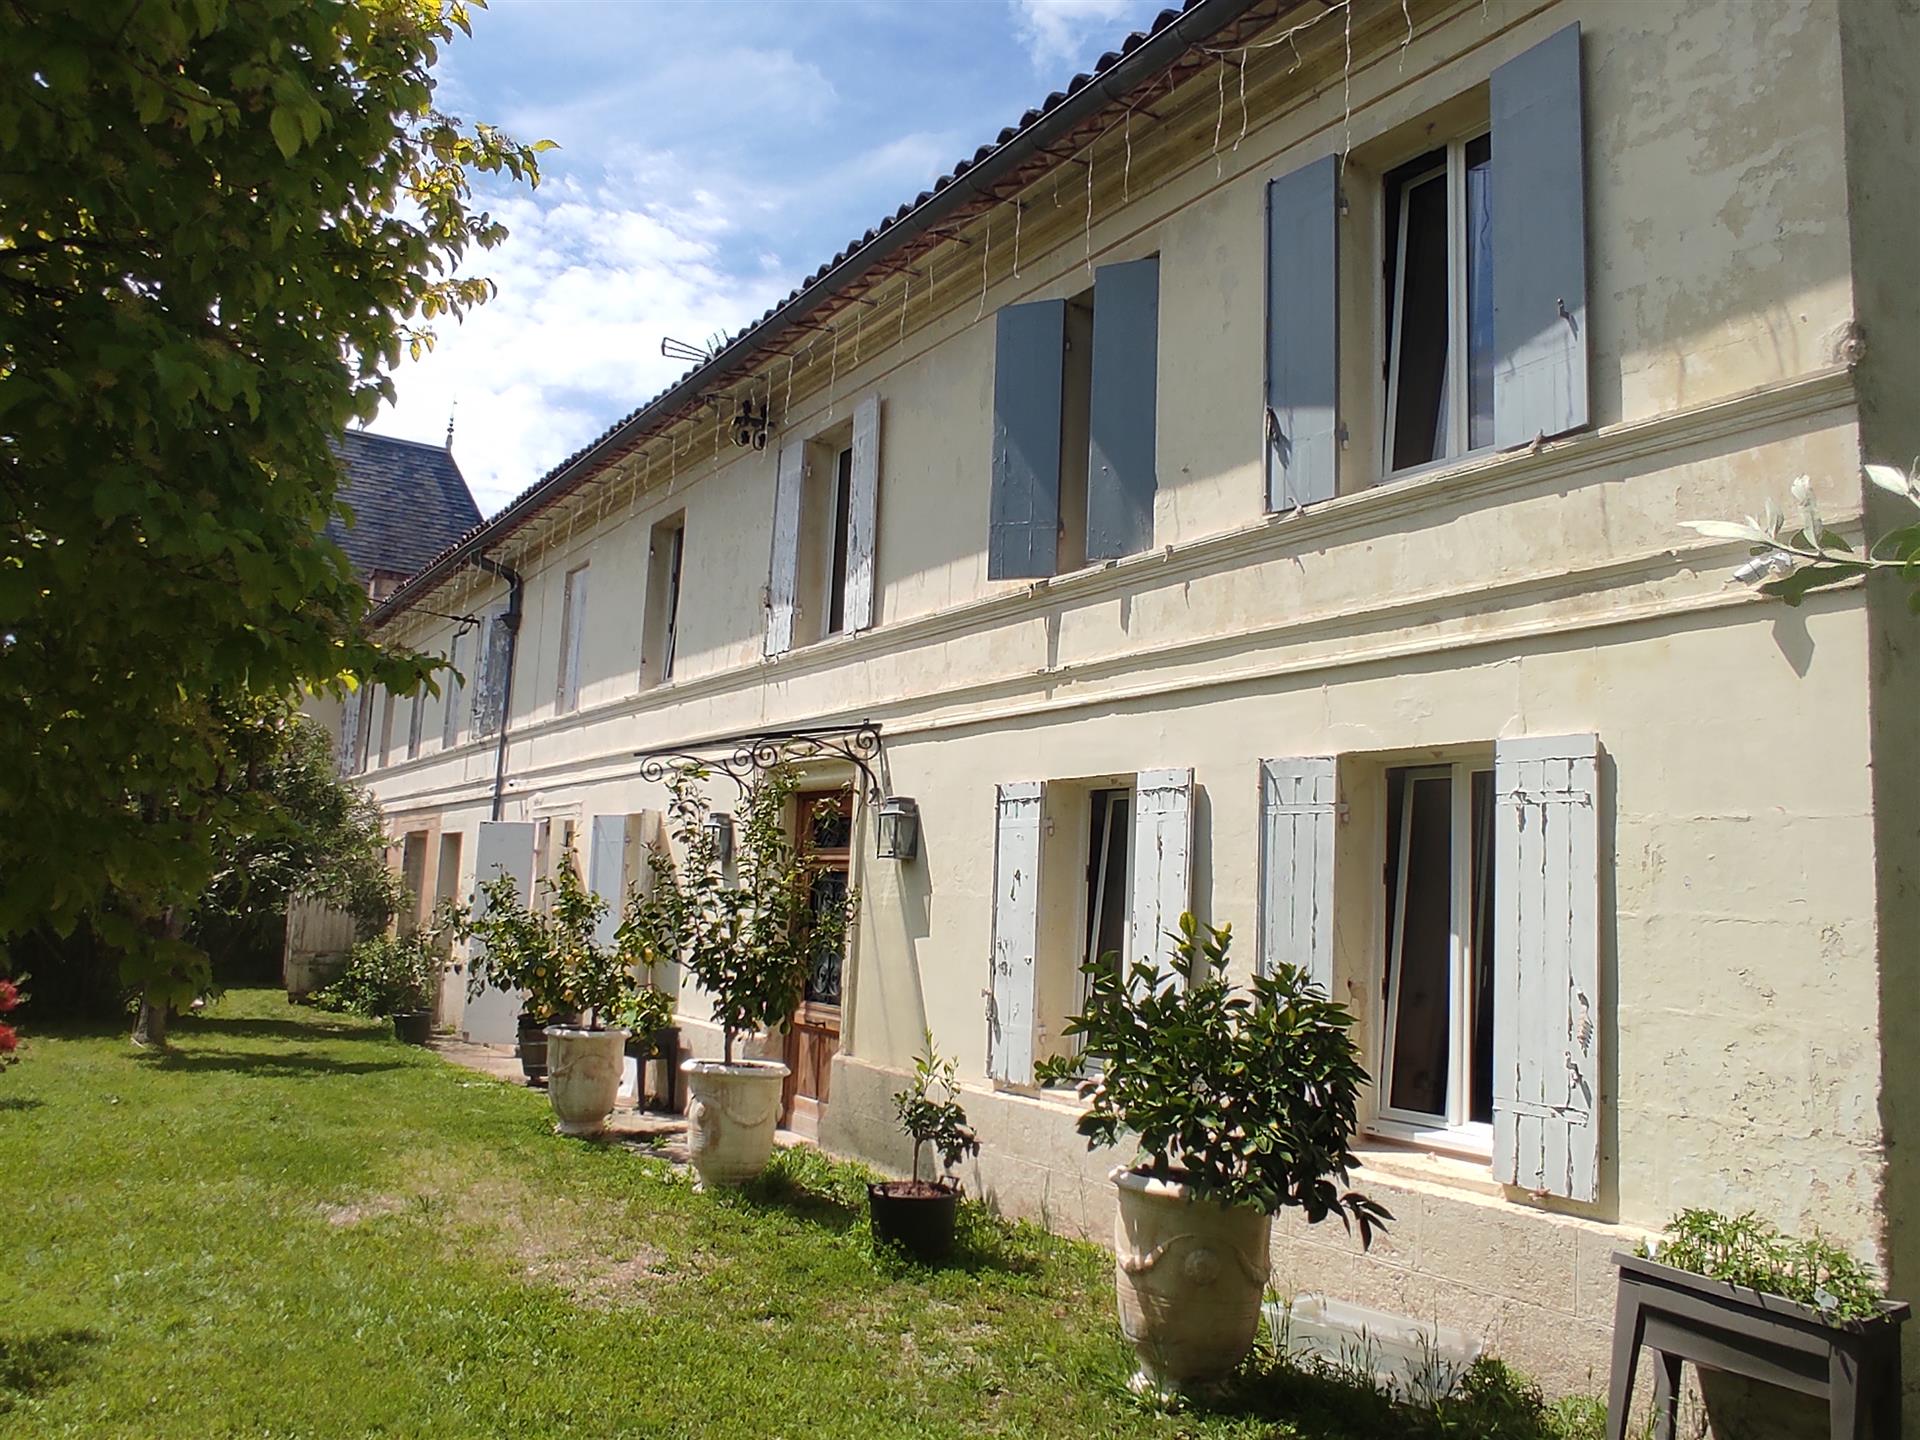 Rijetka prilika za kupnju velike seoske kamene kuće u Saint-Andre-de-Cubzacu, udaljenoj 20 km